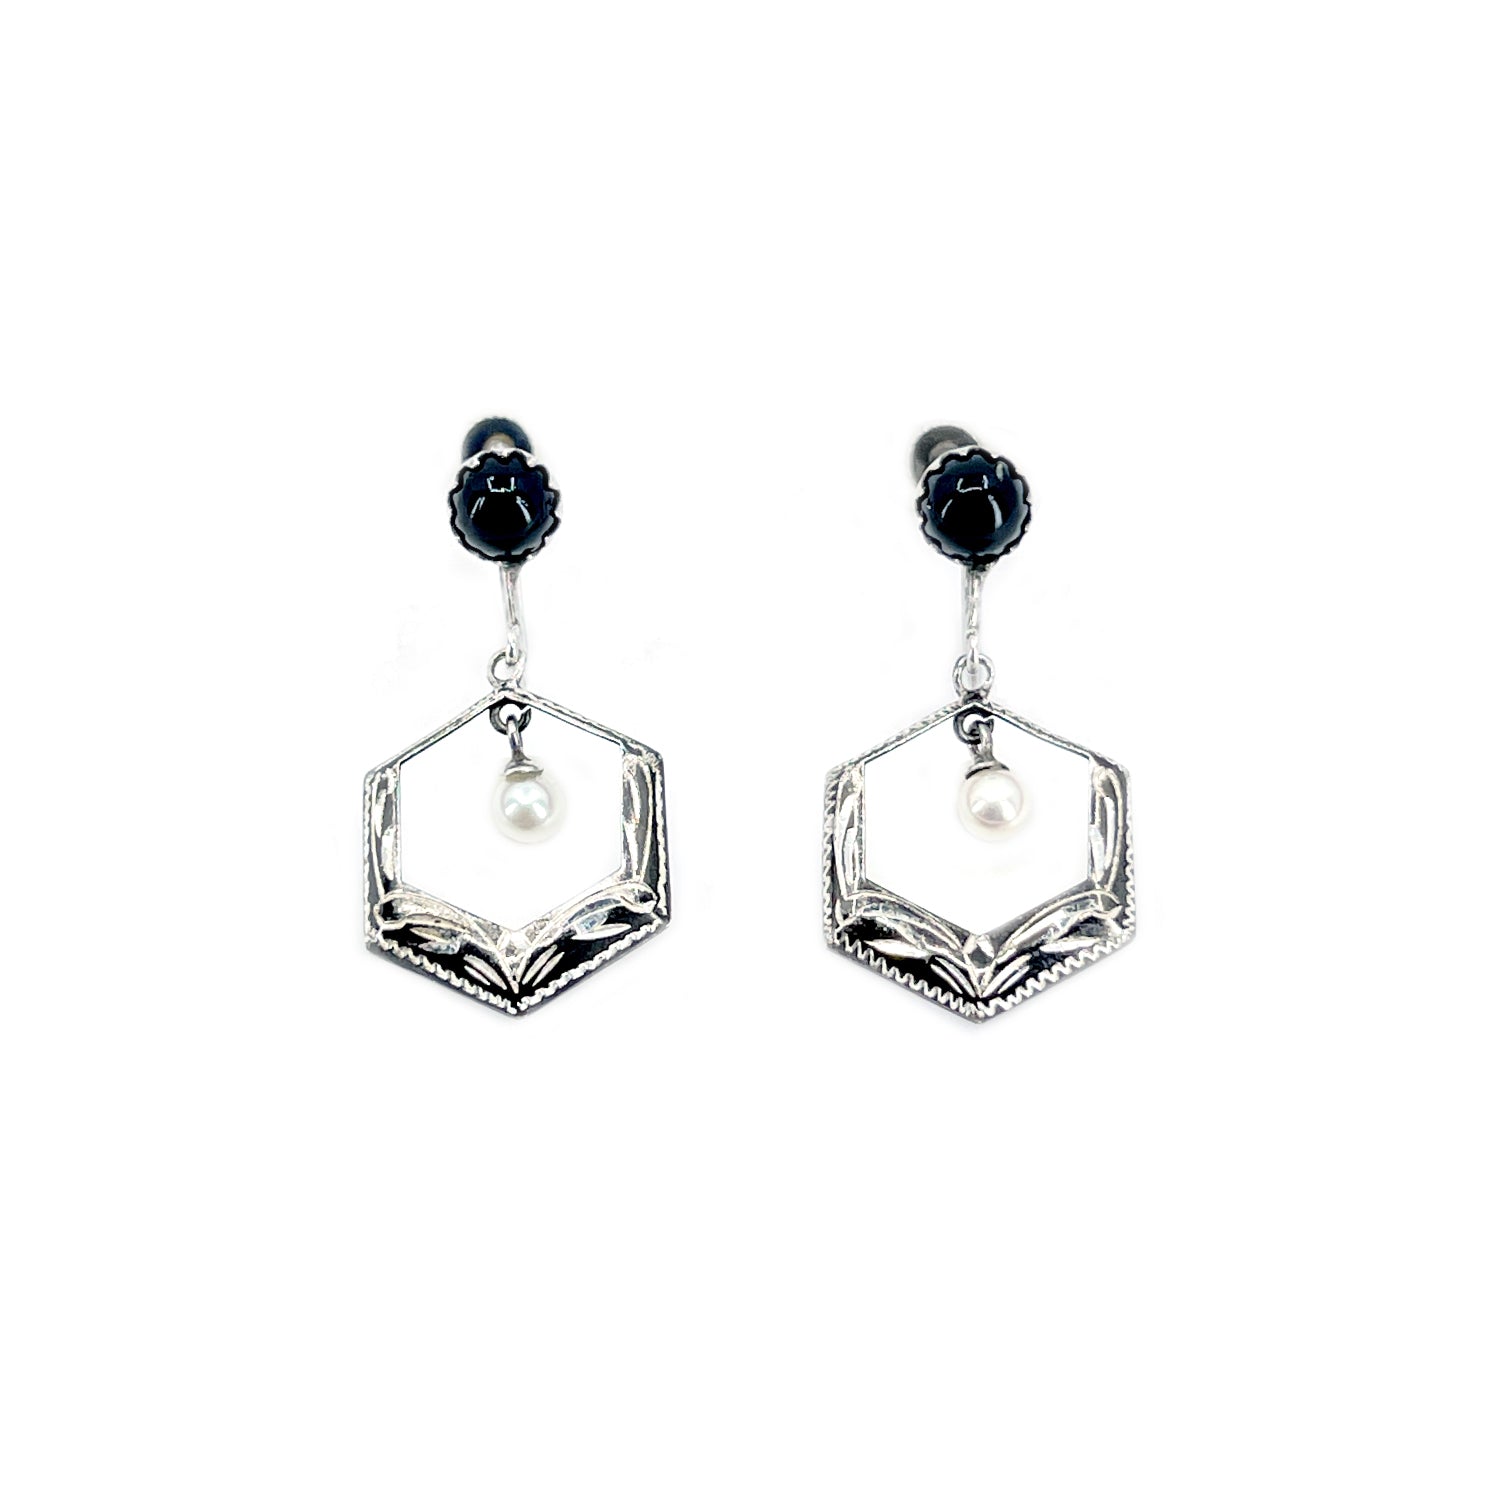 Hexagon Black Enamel Japan Akoya Saltwater Cultured Pearl Vintage Screwback Earrings- Sterling Silver